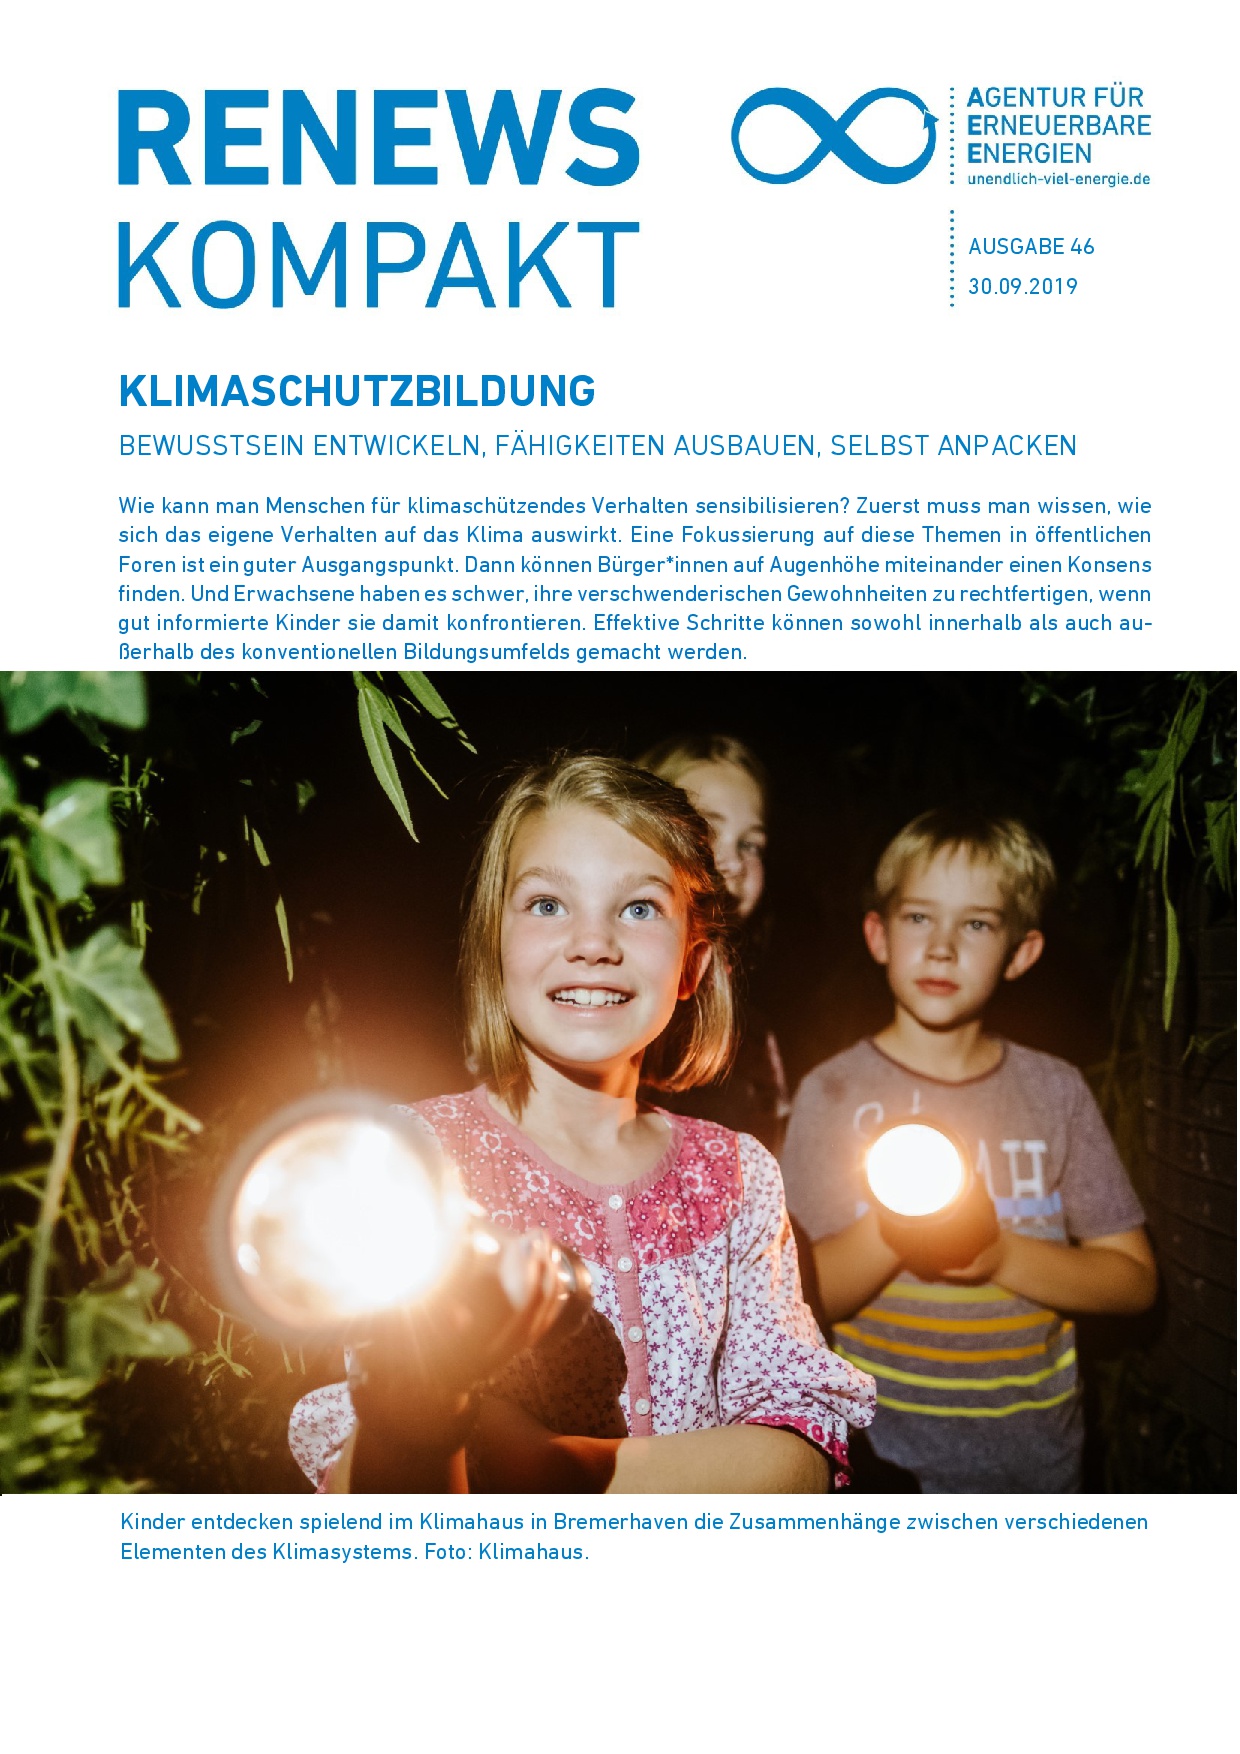 Titel der Renews Kompakt, auf dem drei Kinder mit Taschenlampen zu sehen sind